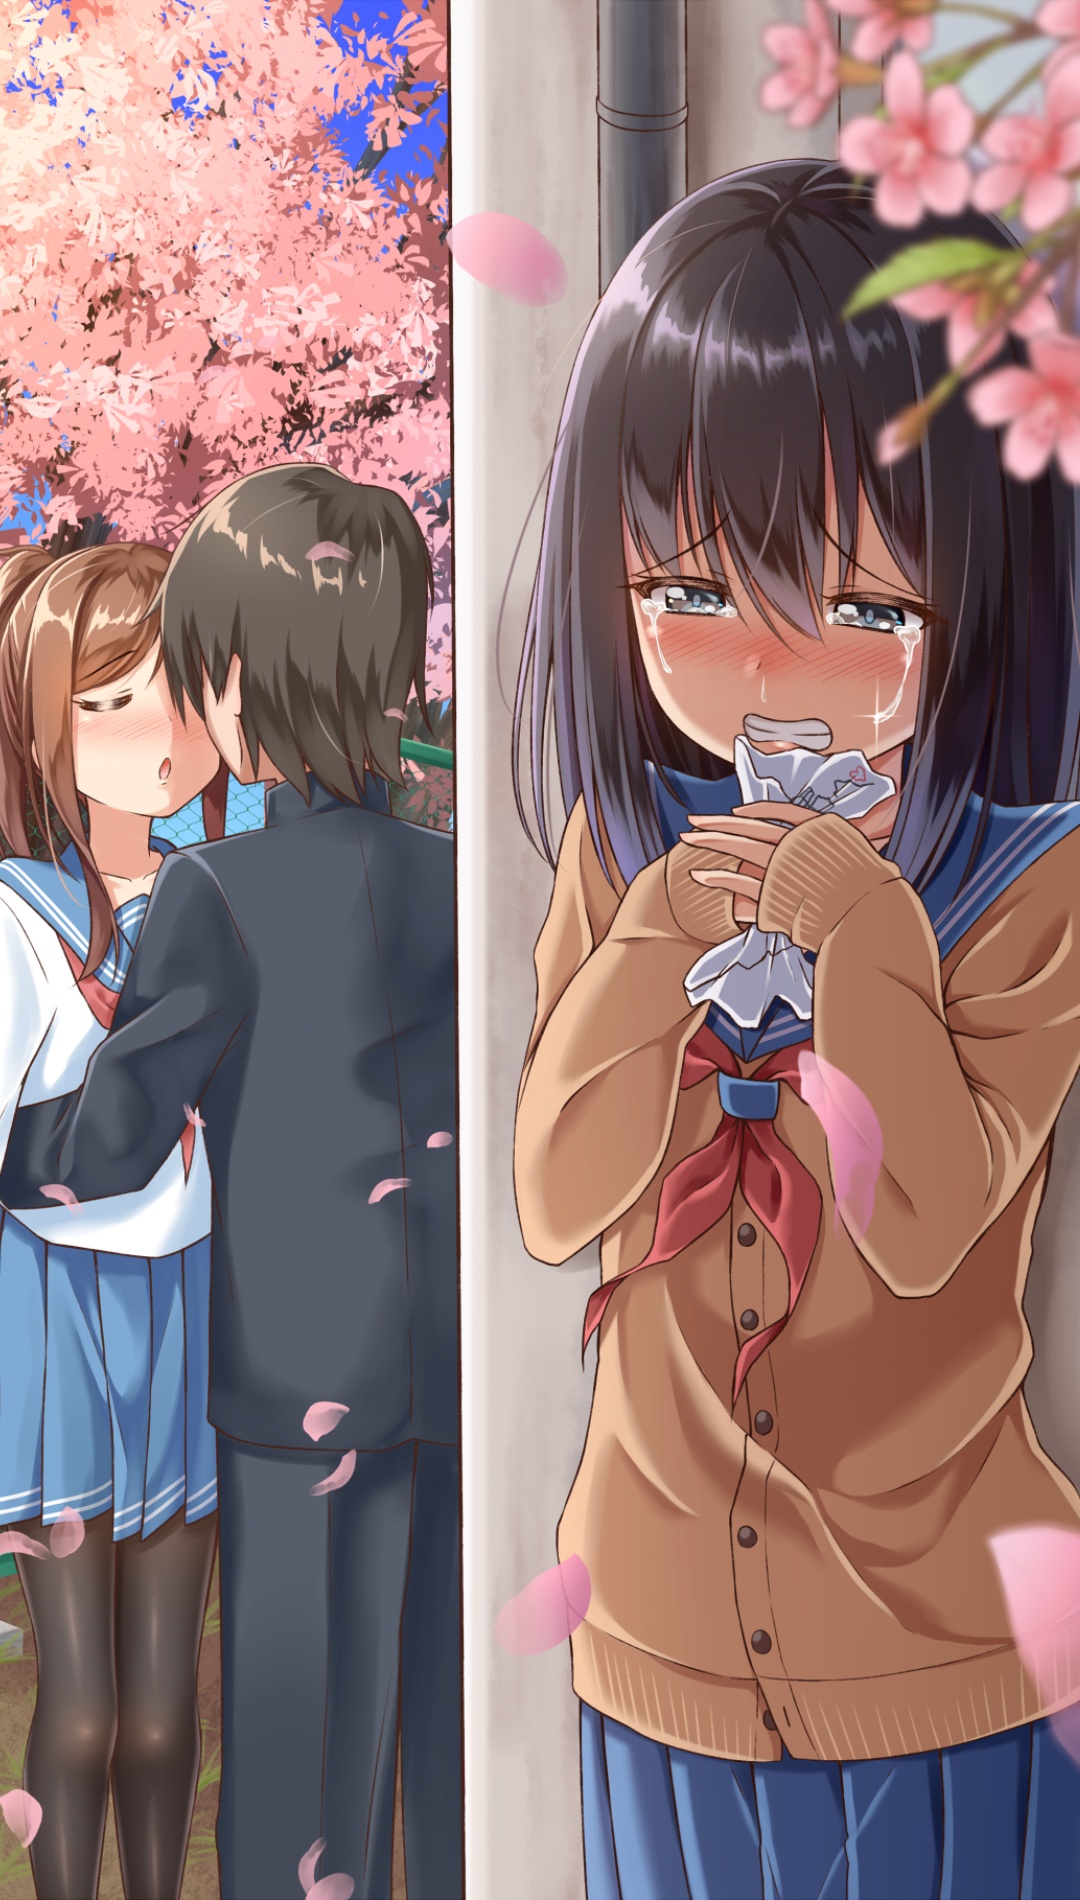 Sad Crying Anime Girl Photos